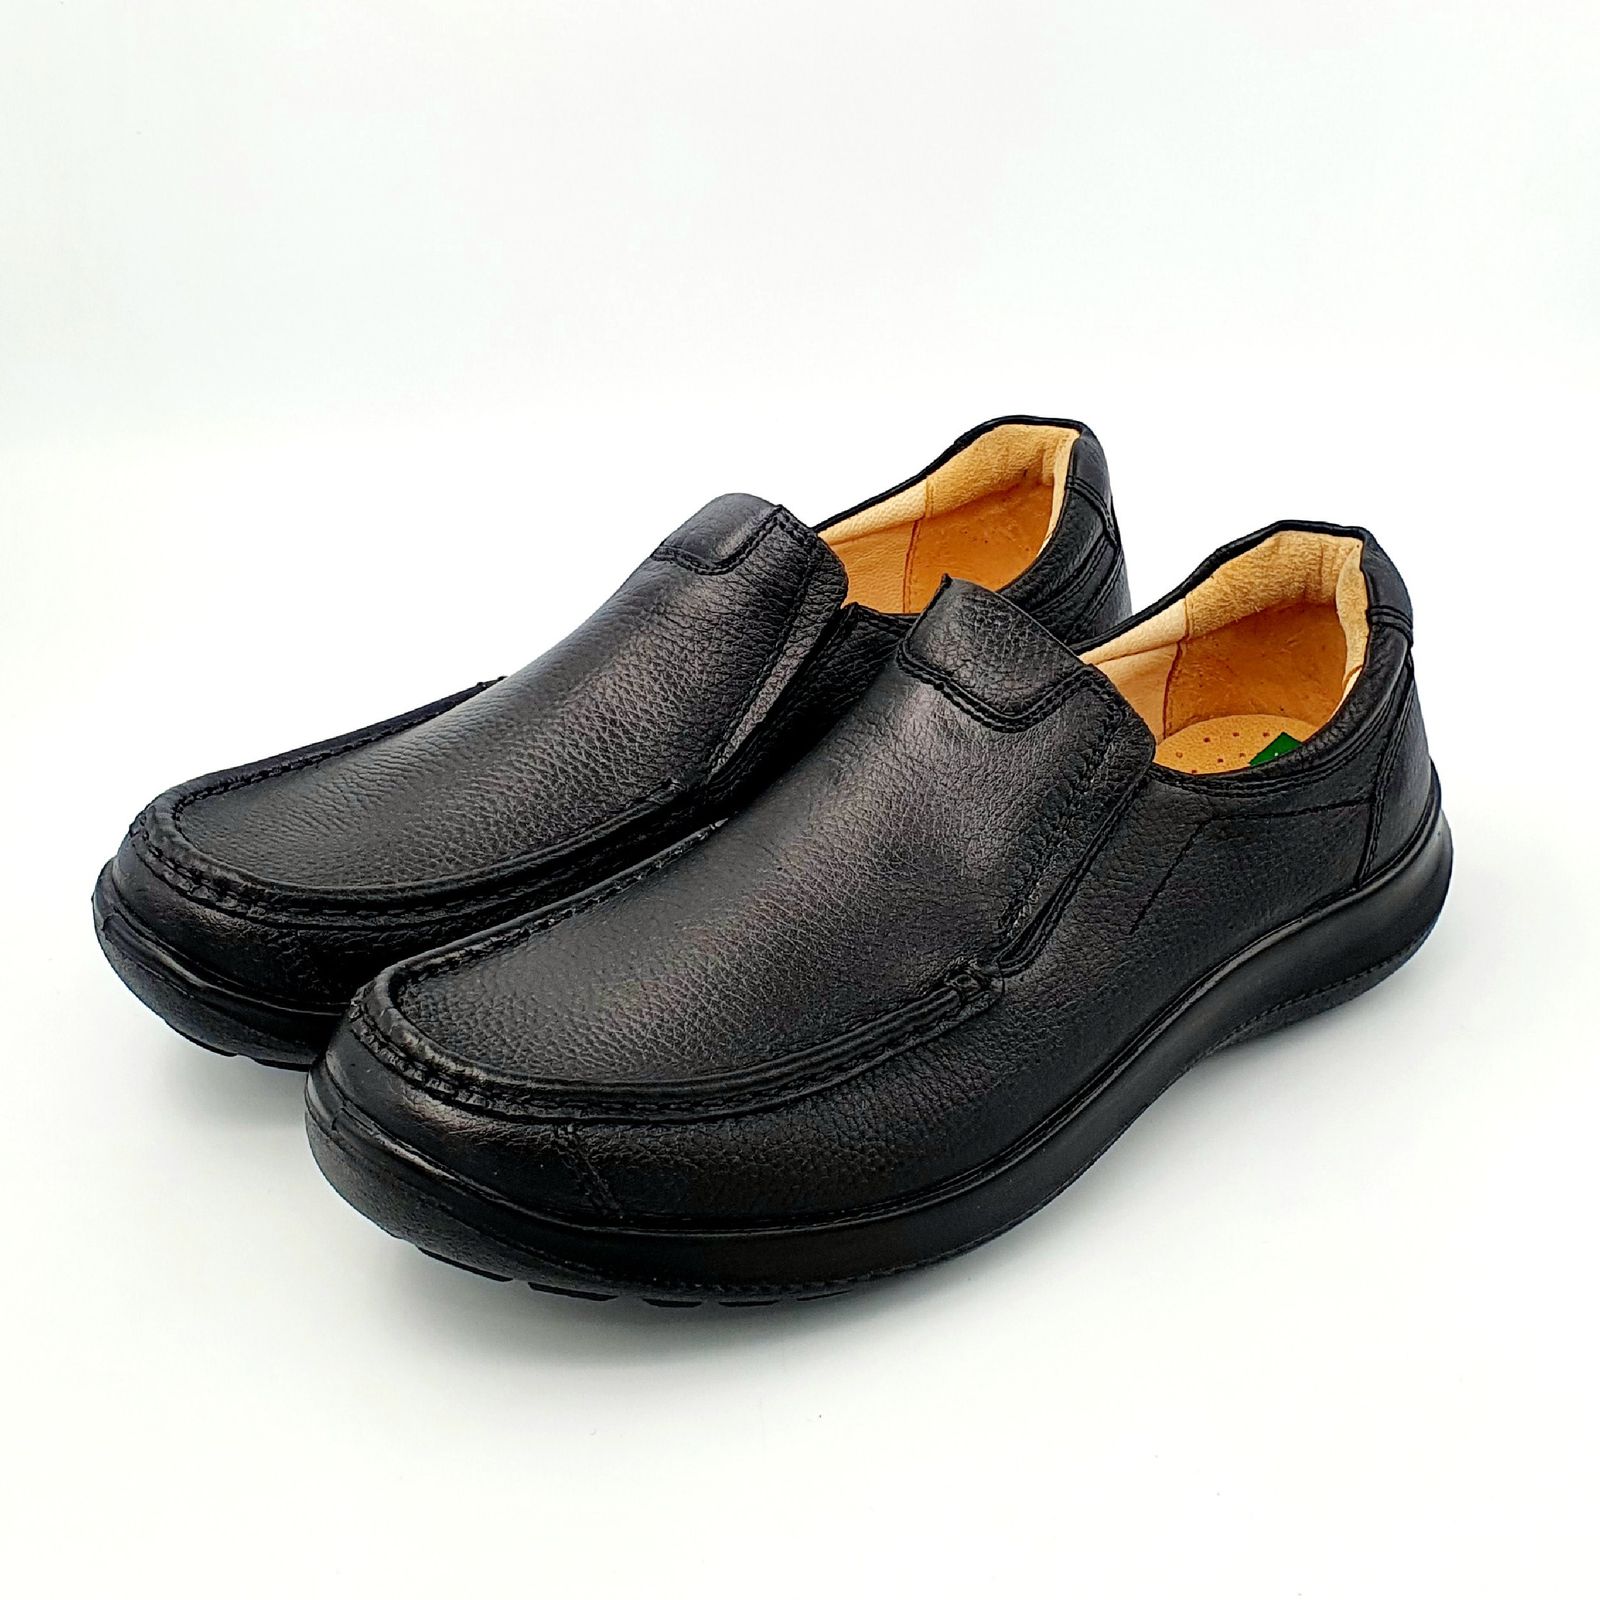 کفش روزمره مردانه شرکت کفش البرز مدل KYO کد 2383-3 -  - 2